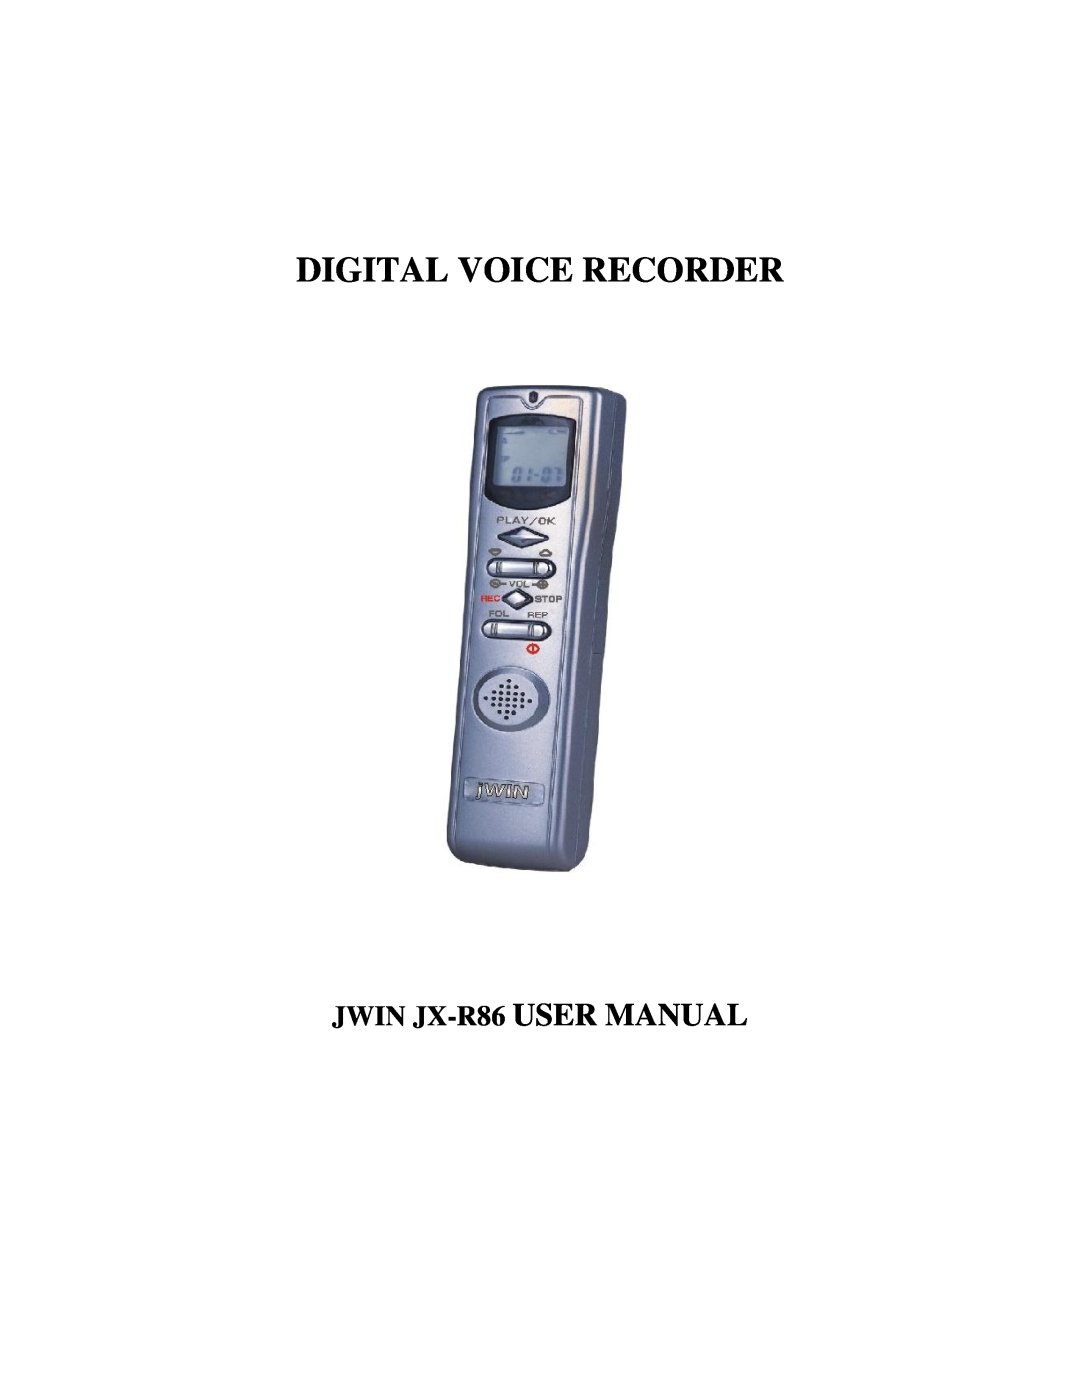 Jwin user manual Digital Voice Recorder, JWIN JX-R86 USER MANUAL 